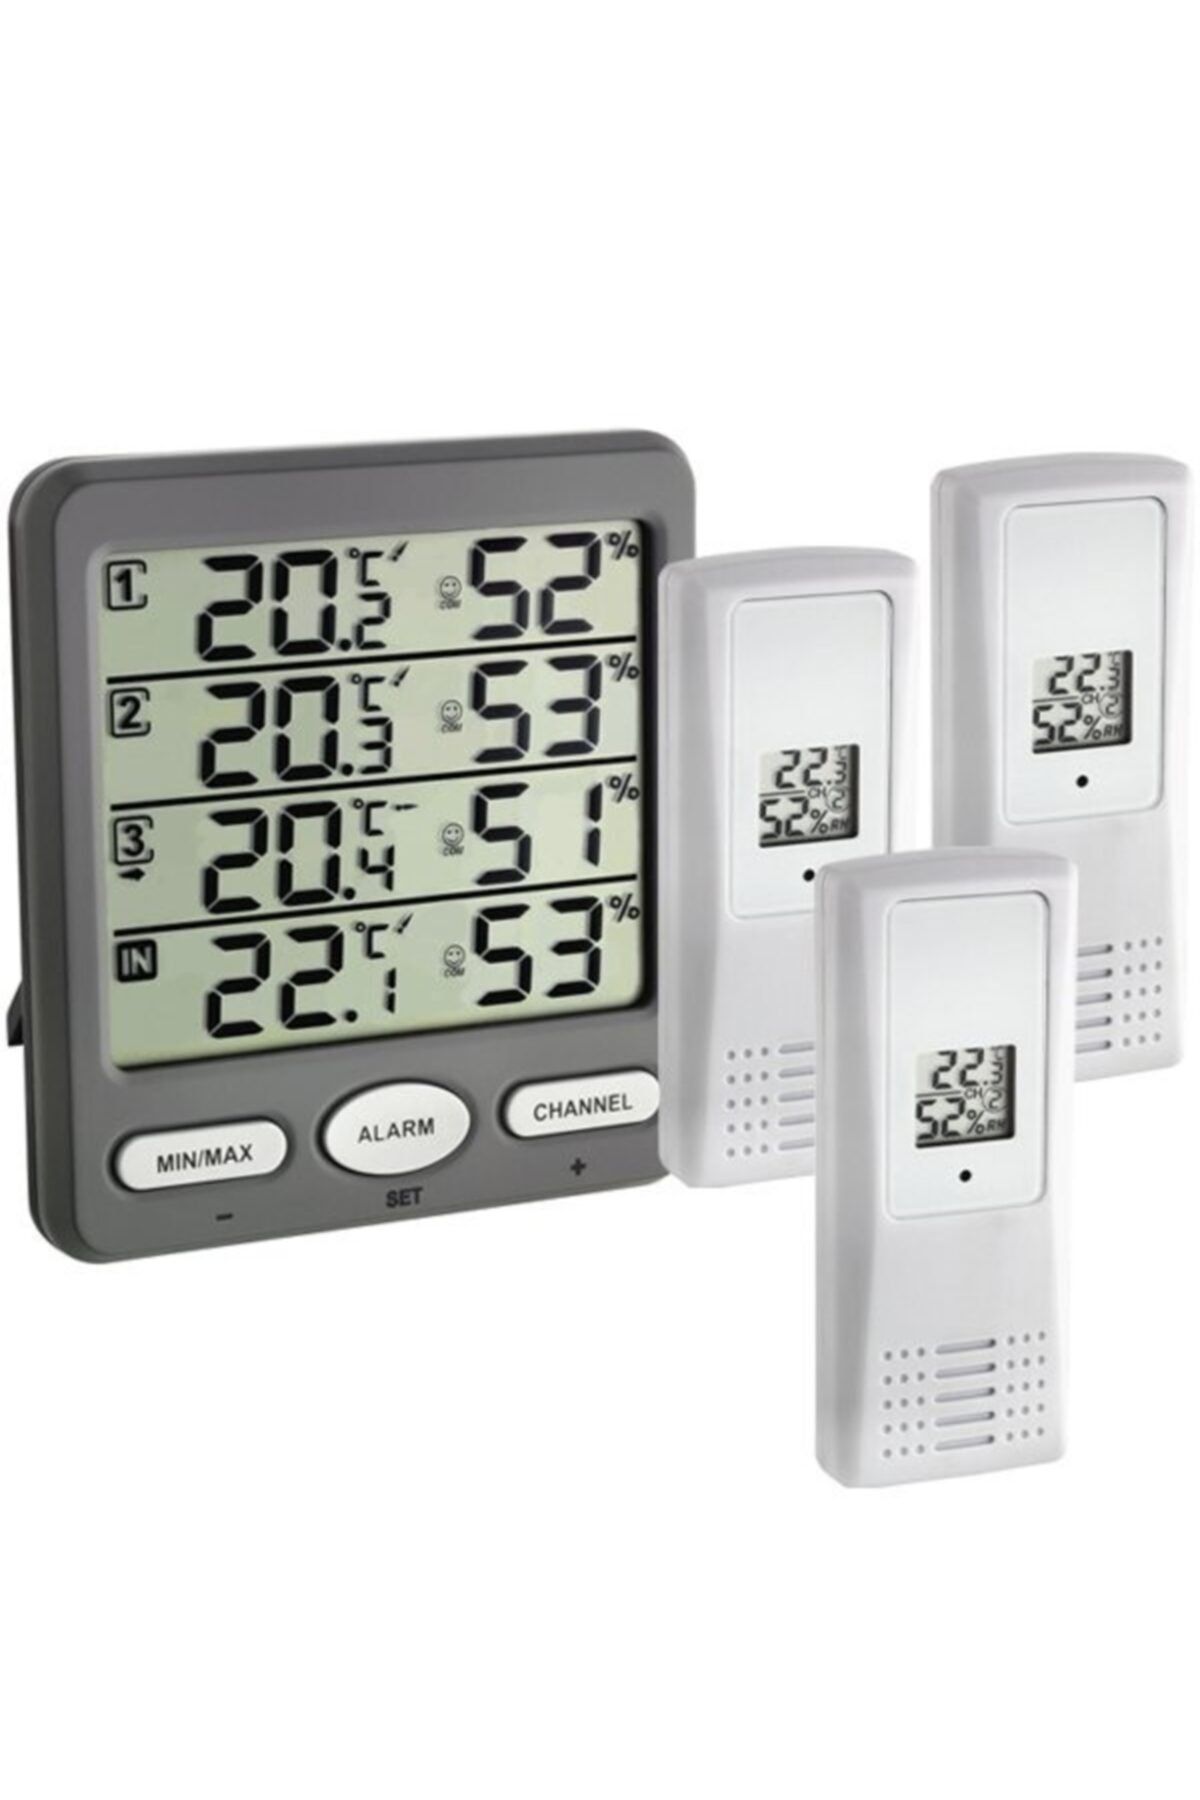 TFA 30.3054.10 Klima Monitor Çoklu Ortam Sıcaklık Ve Nem Takip Cihazı